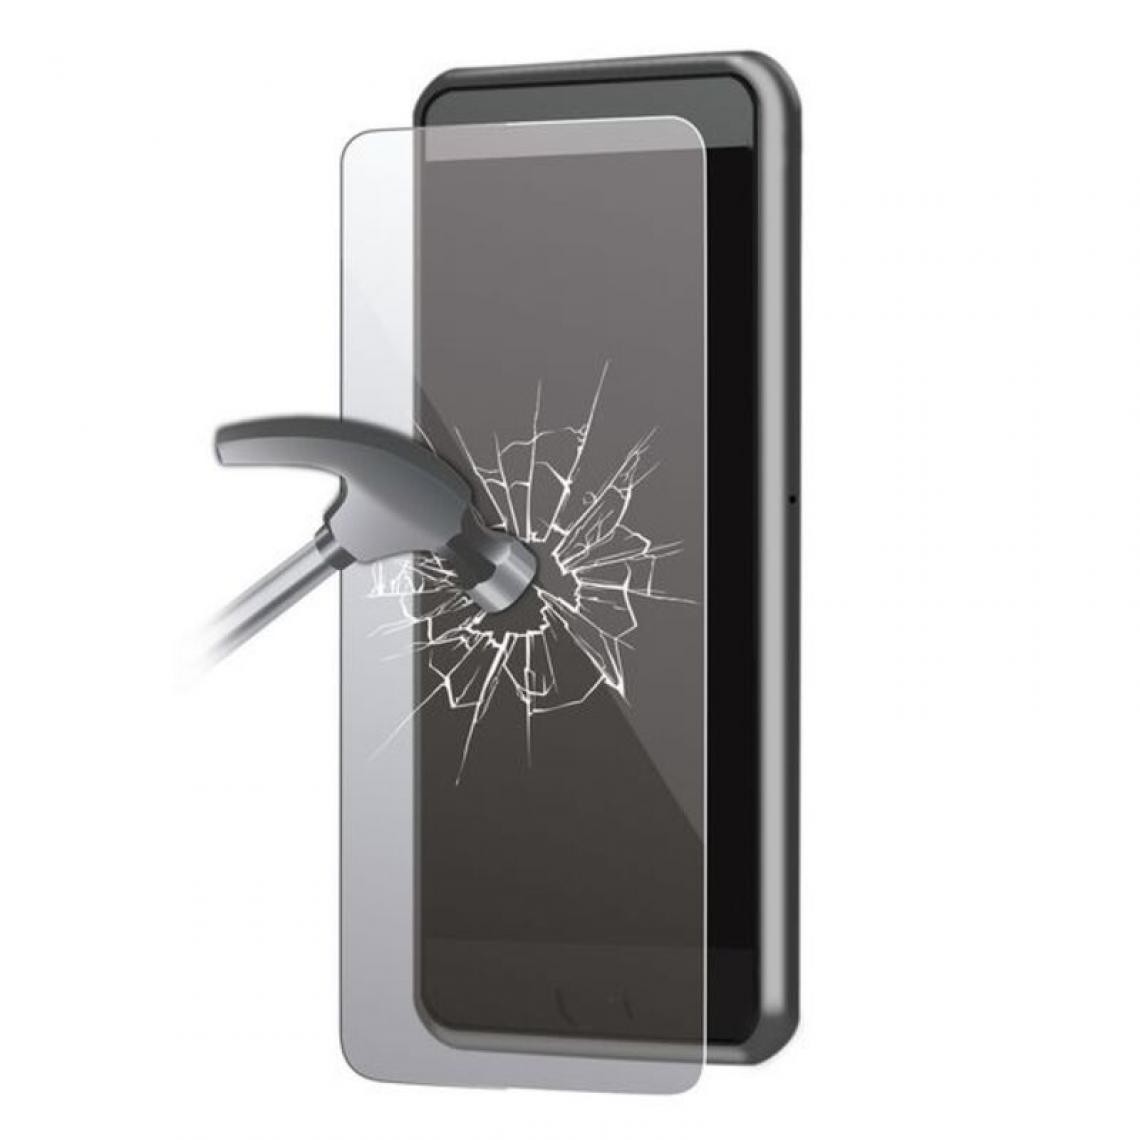 Inconnu - Film Protecteur en Verre Trempé pour Téléphone Portable Iphone 6 Plus-6s Plus Extreme - Protection écran smartphone